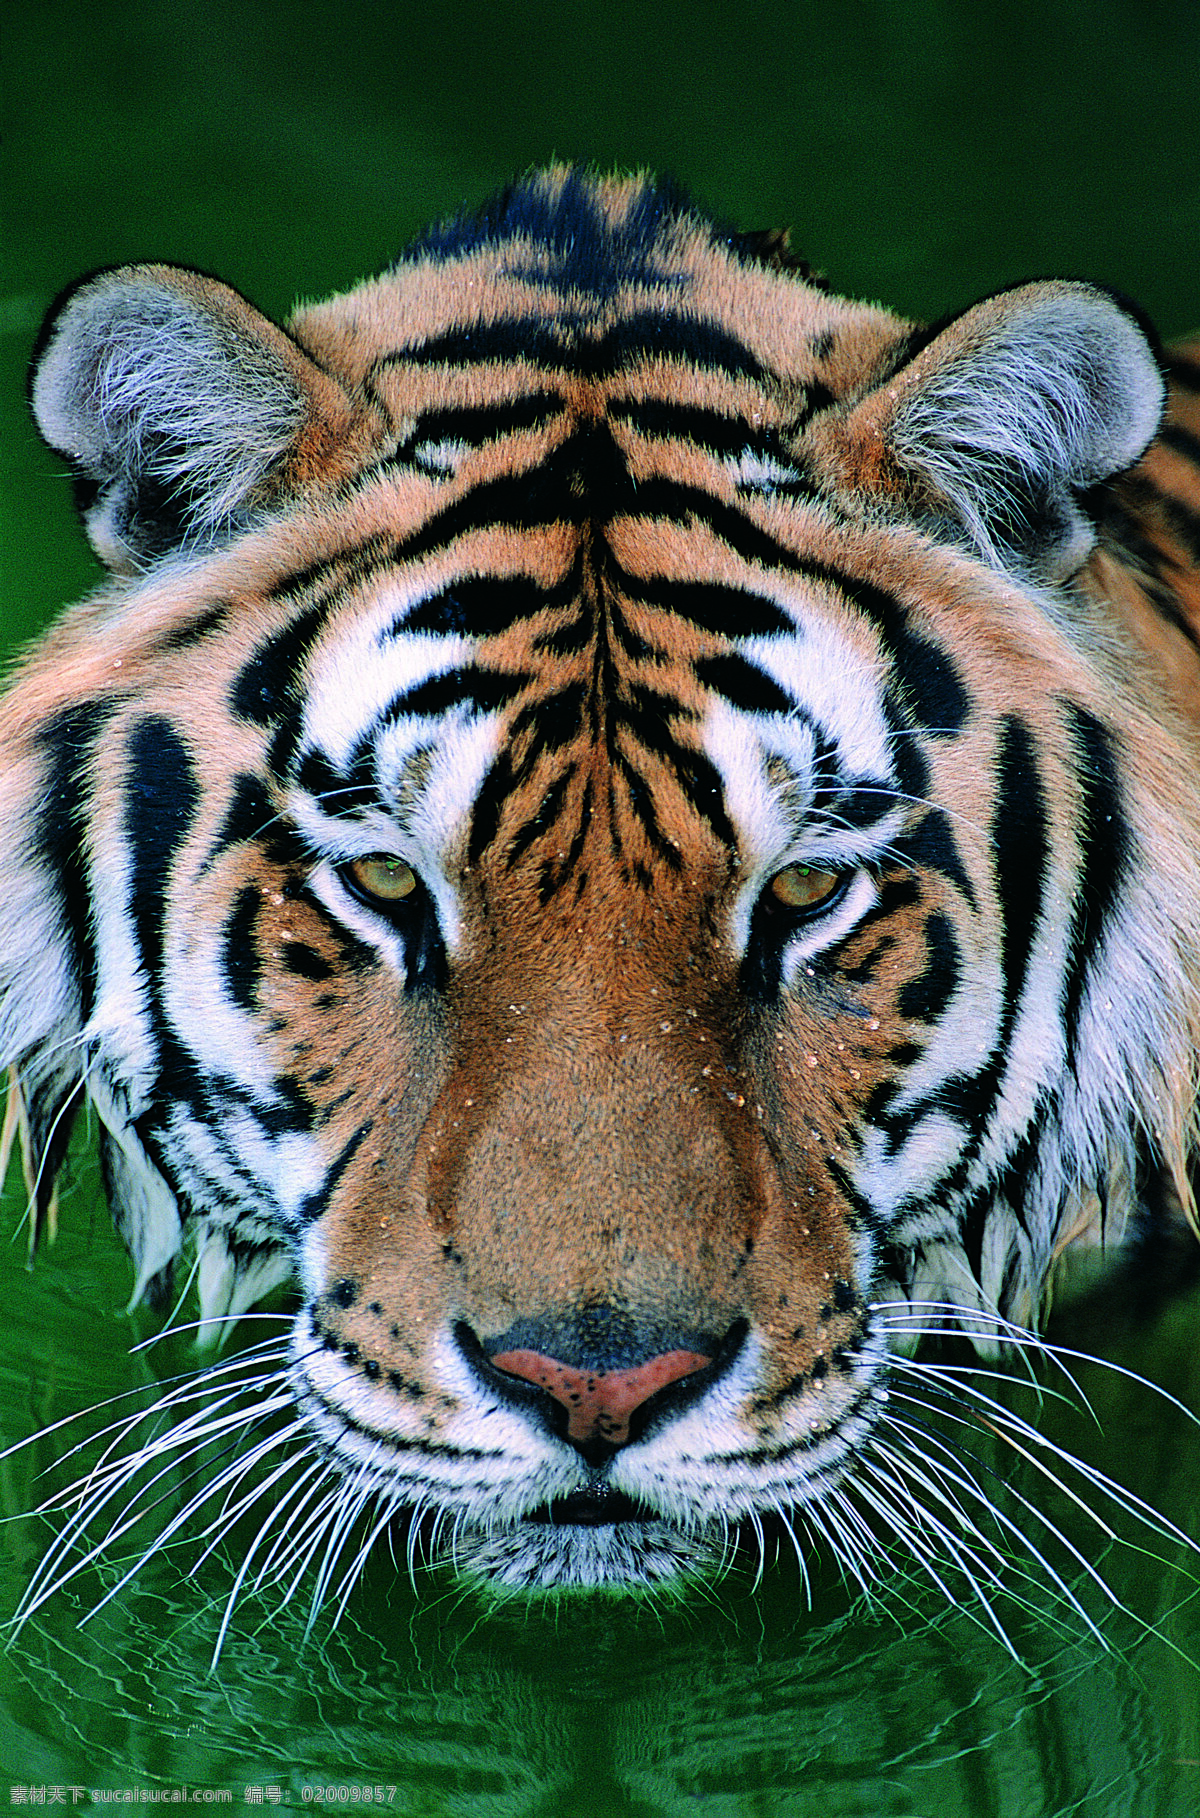 老虎 头部 野生动物 动物世界 哺乳动物 喝水 摄影图 陆地动物 生物世界